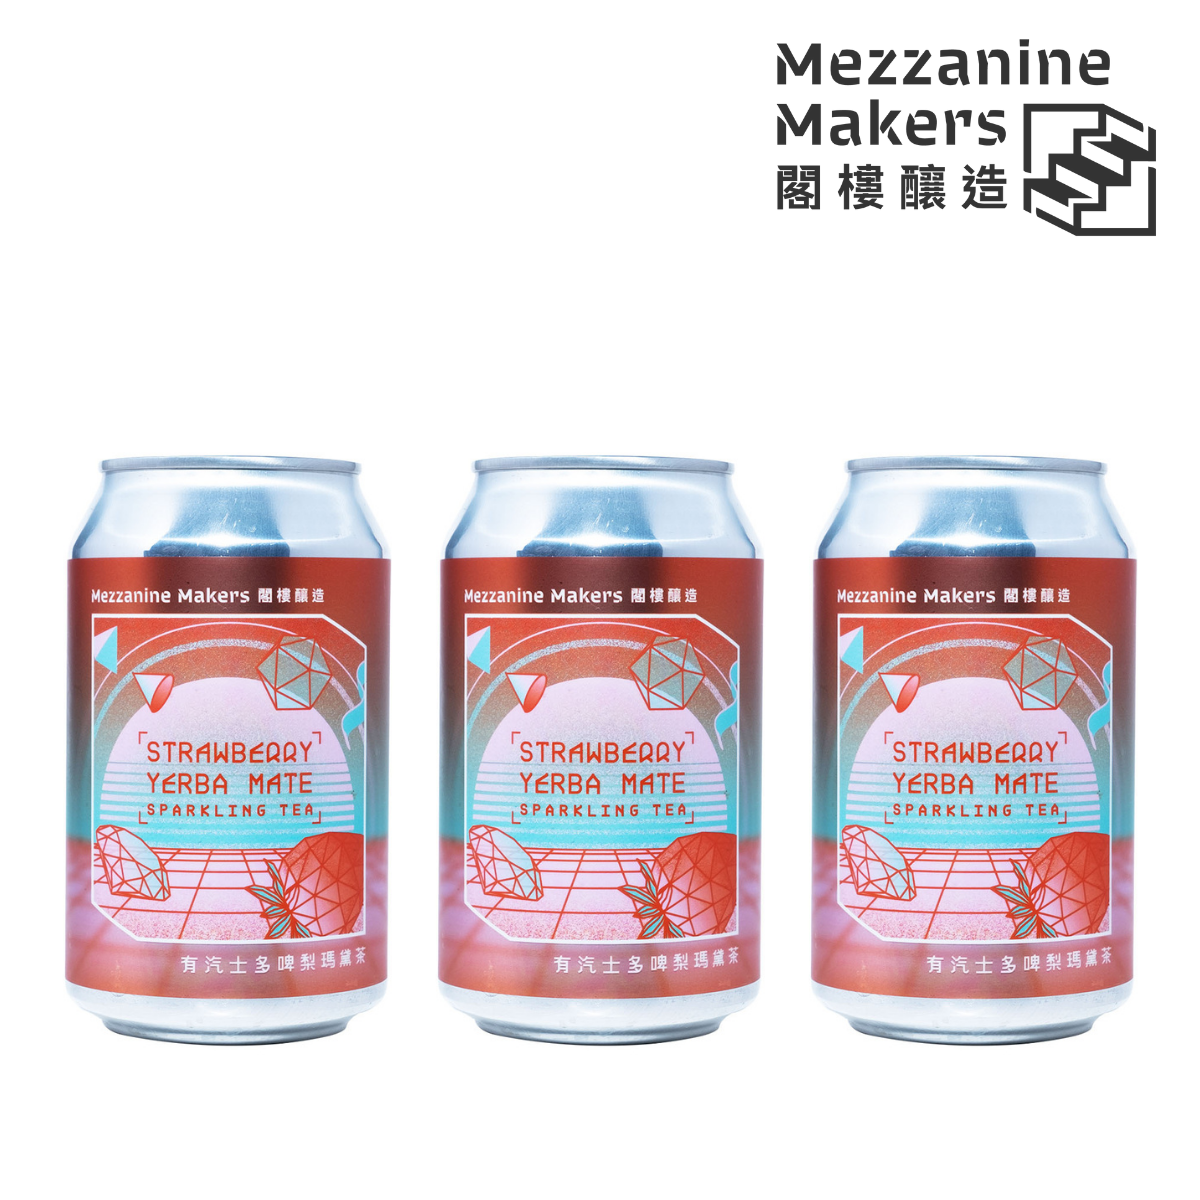 有汽士多啤梨瑪黛茶 Strawberry Yerba Mate Sparkling Tea 330ml * 3 罐 香港品牌本地製造天然材料